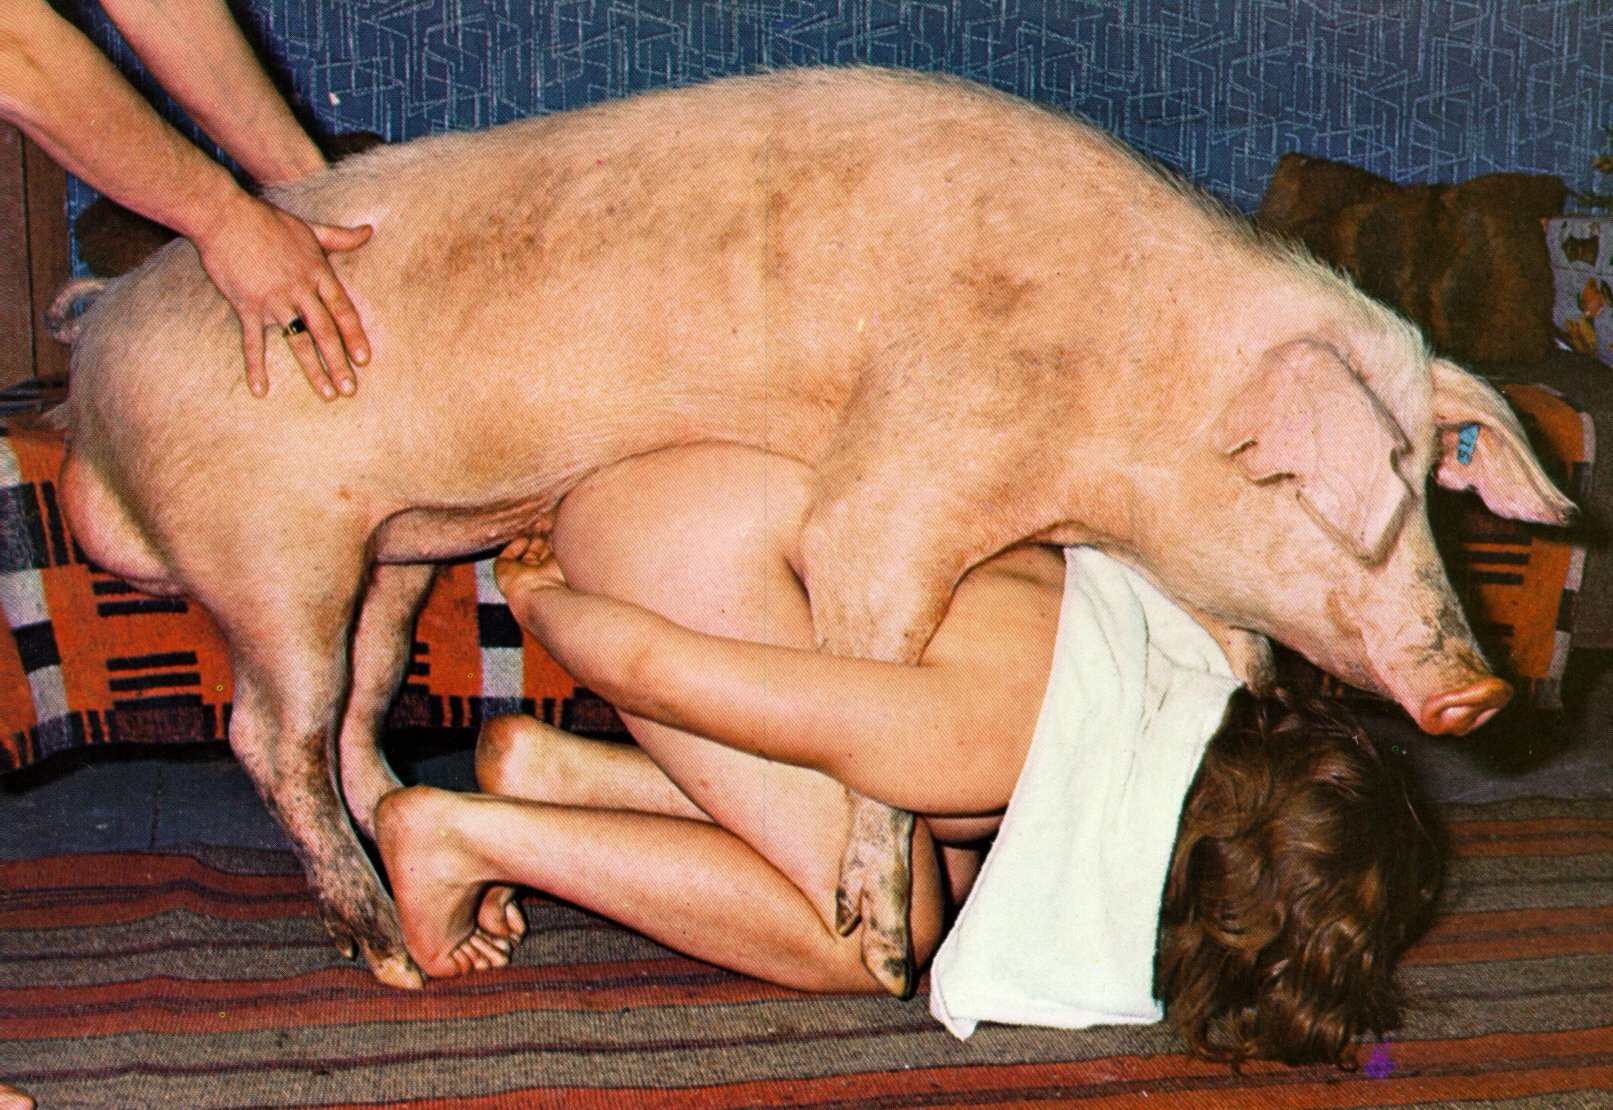 Pig sex porn